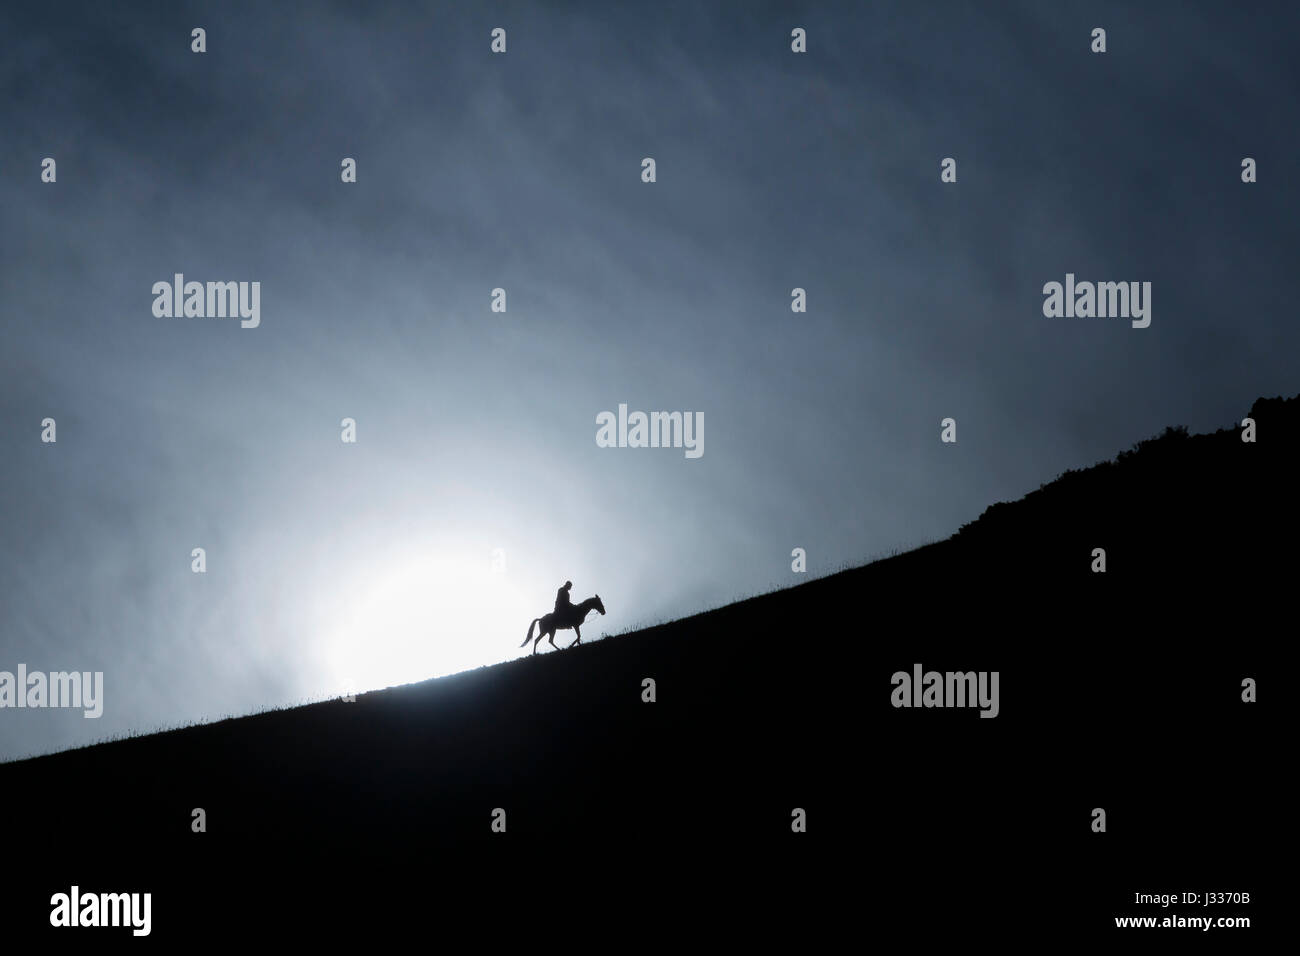 Einsame Reiter klettern auf Berge fahren gegen die Sonne Silhouette Stockfoto